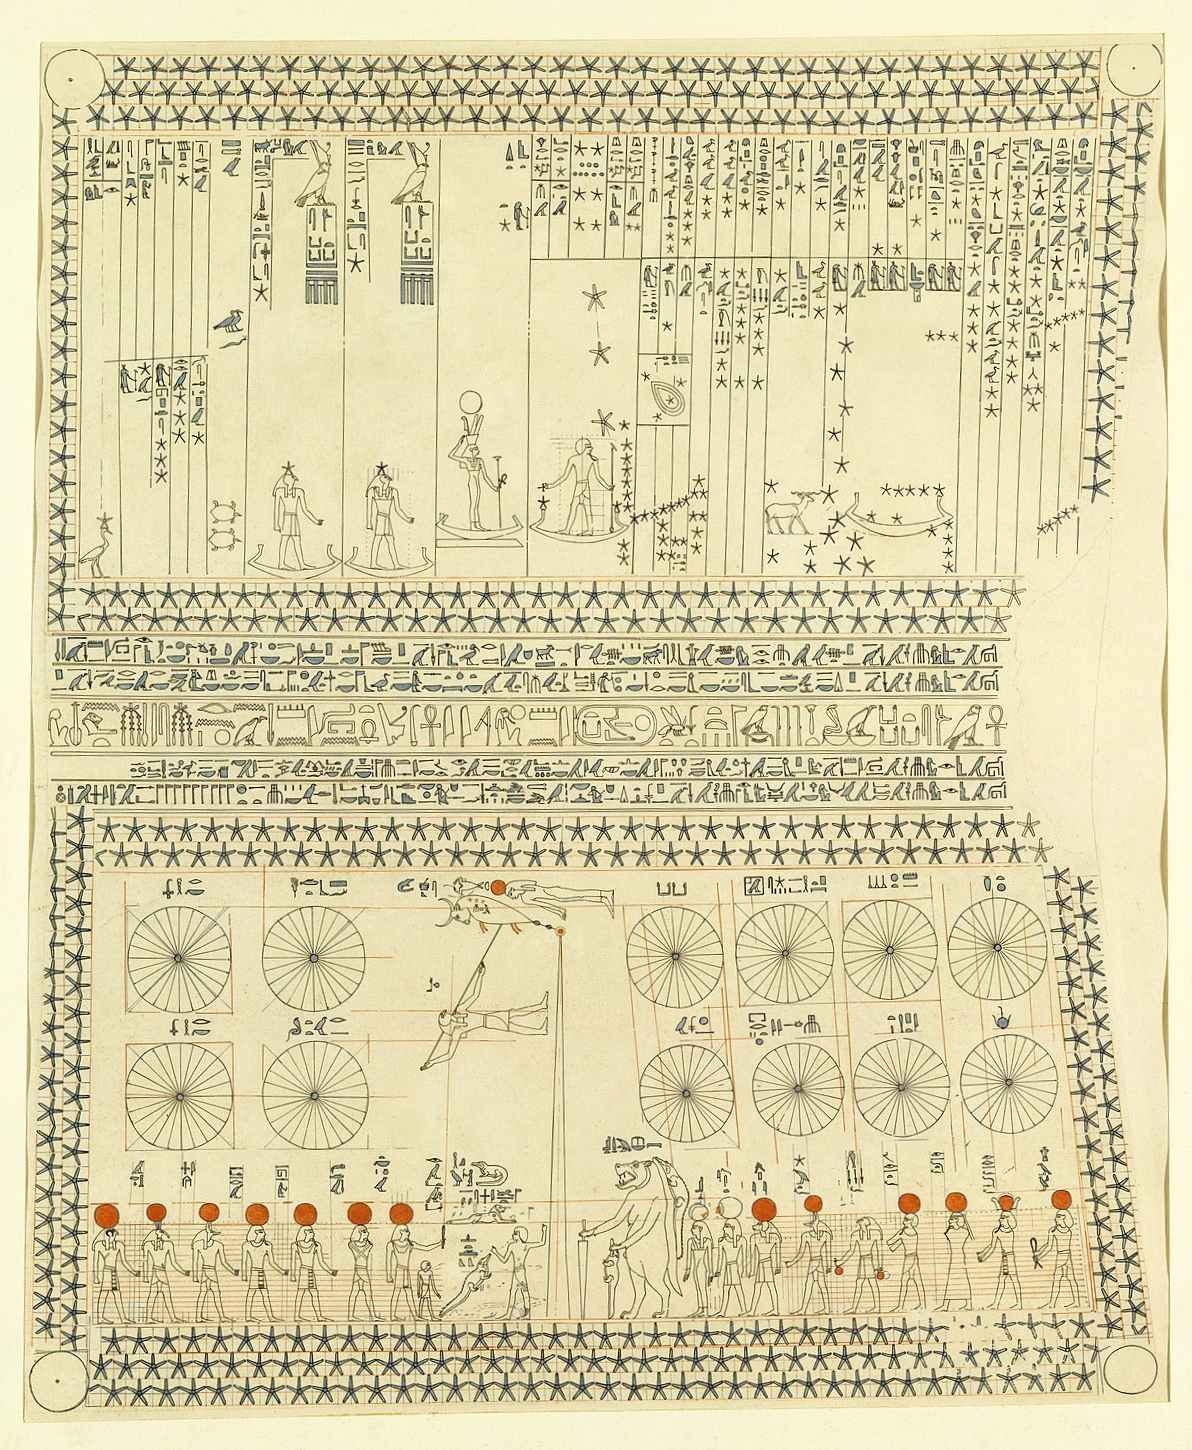 Het mysterieuze graf van Senenmut en de vroegst bekende sterrenkaart in het oude Egypte 4